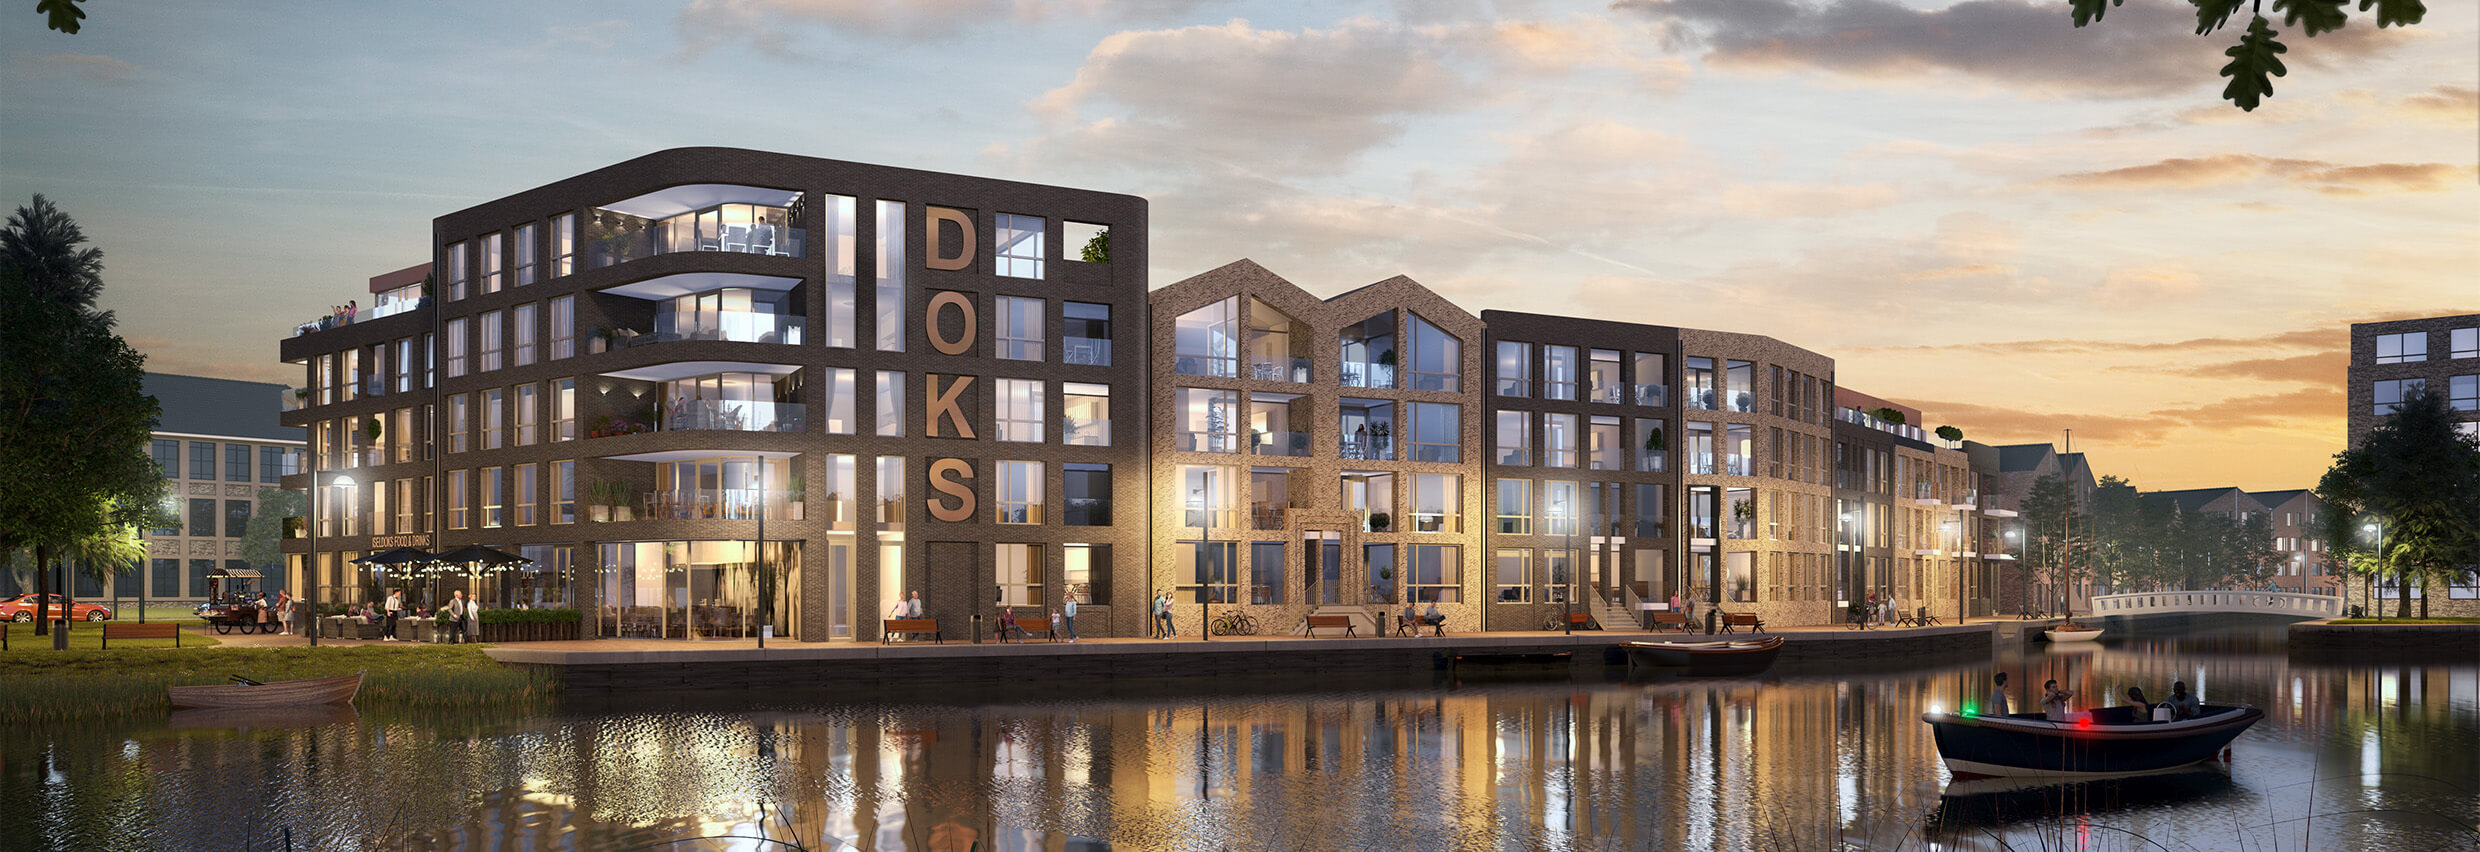 Artist impressie overzichtelijk wonen aan water in avondlicht van het voorlopige ontwerp wooncomplex Iseldoks